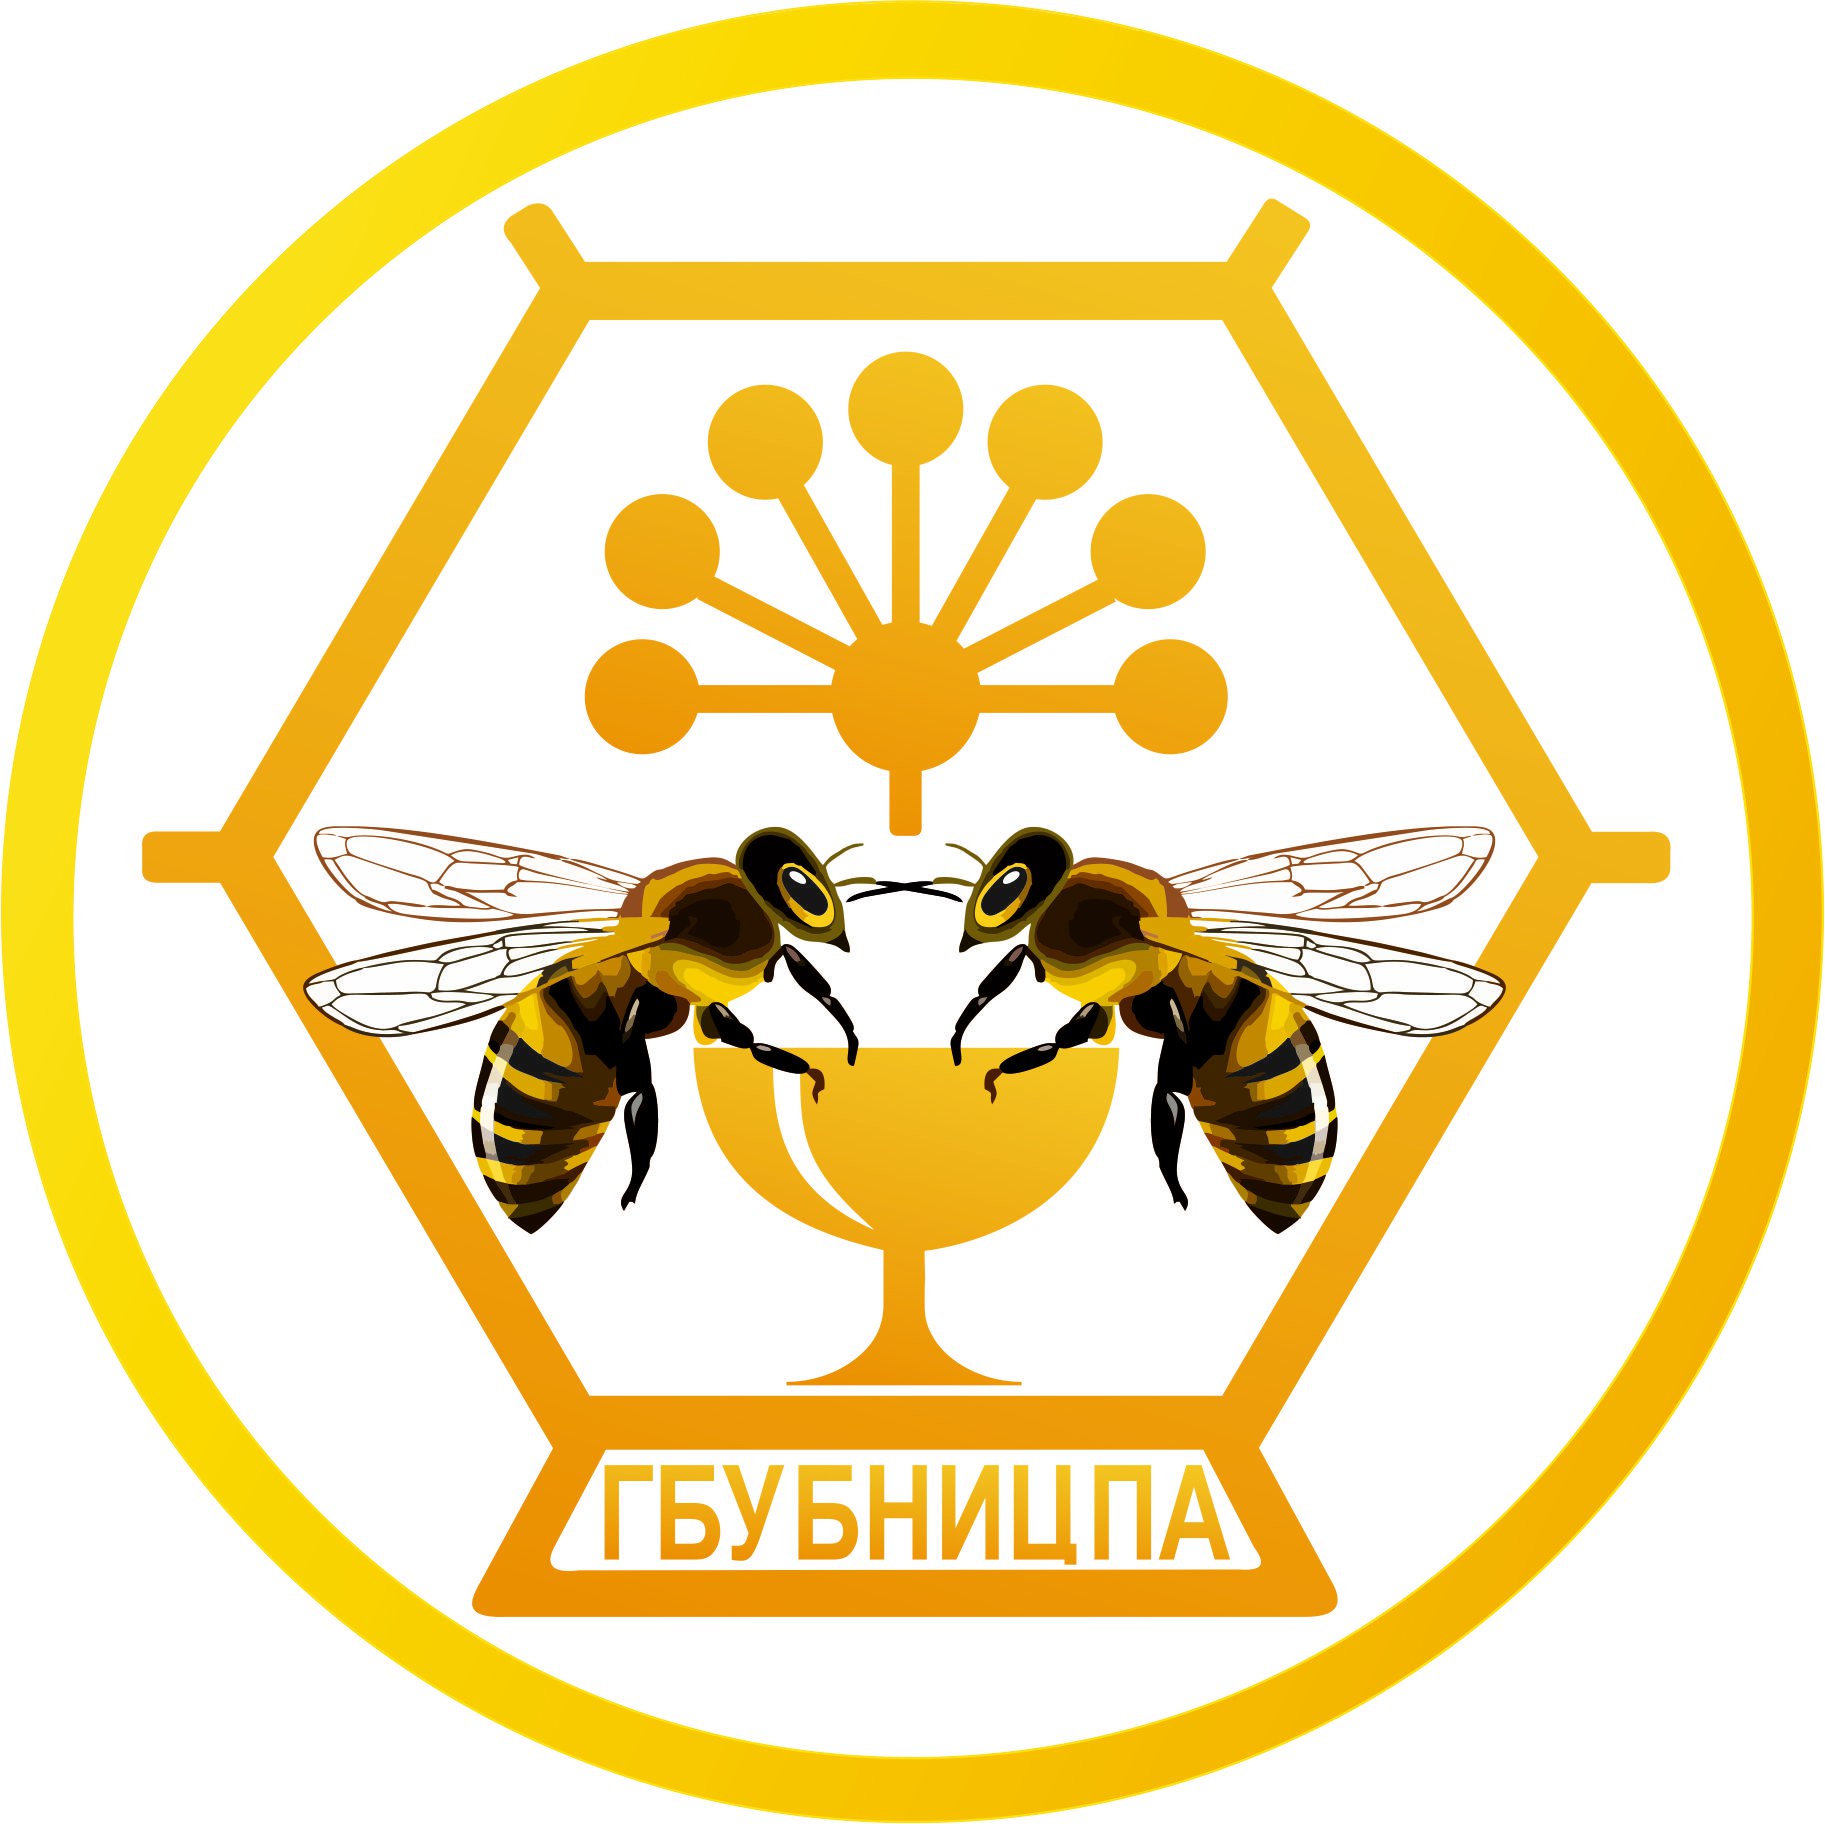 Центр апитерапия. Мед логотип. Логотип пчеловода. Башкирский мед логотип. Логотипы пчелиной продукции.